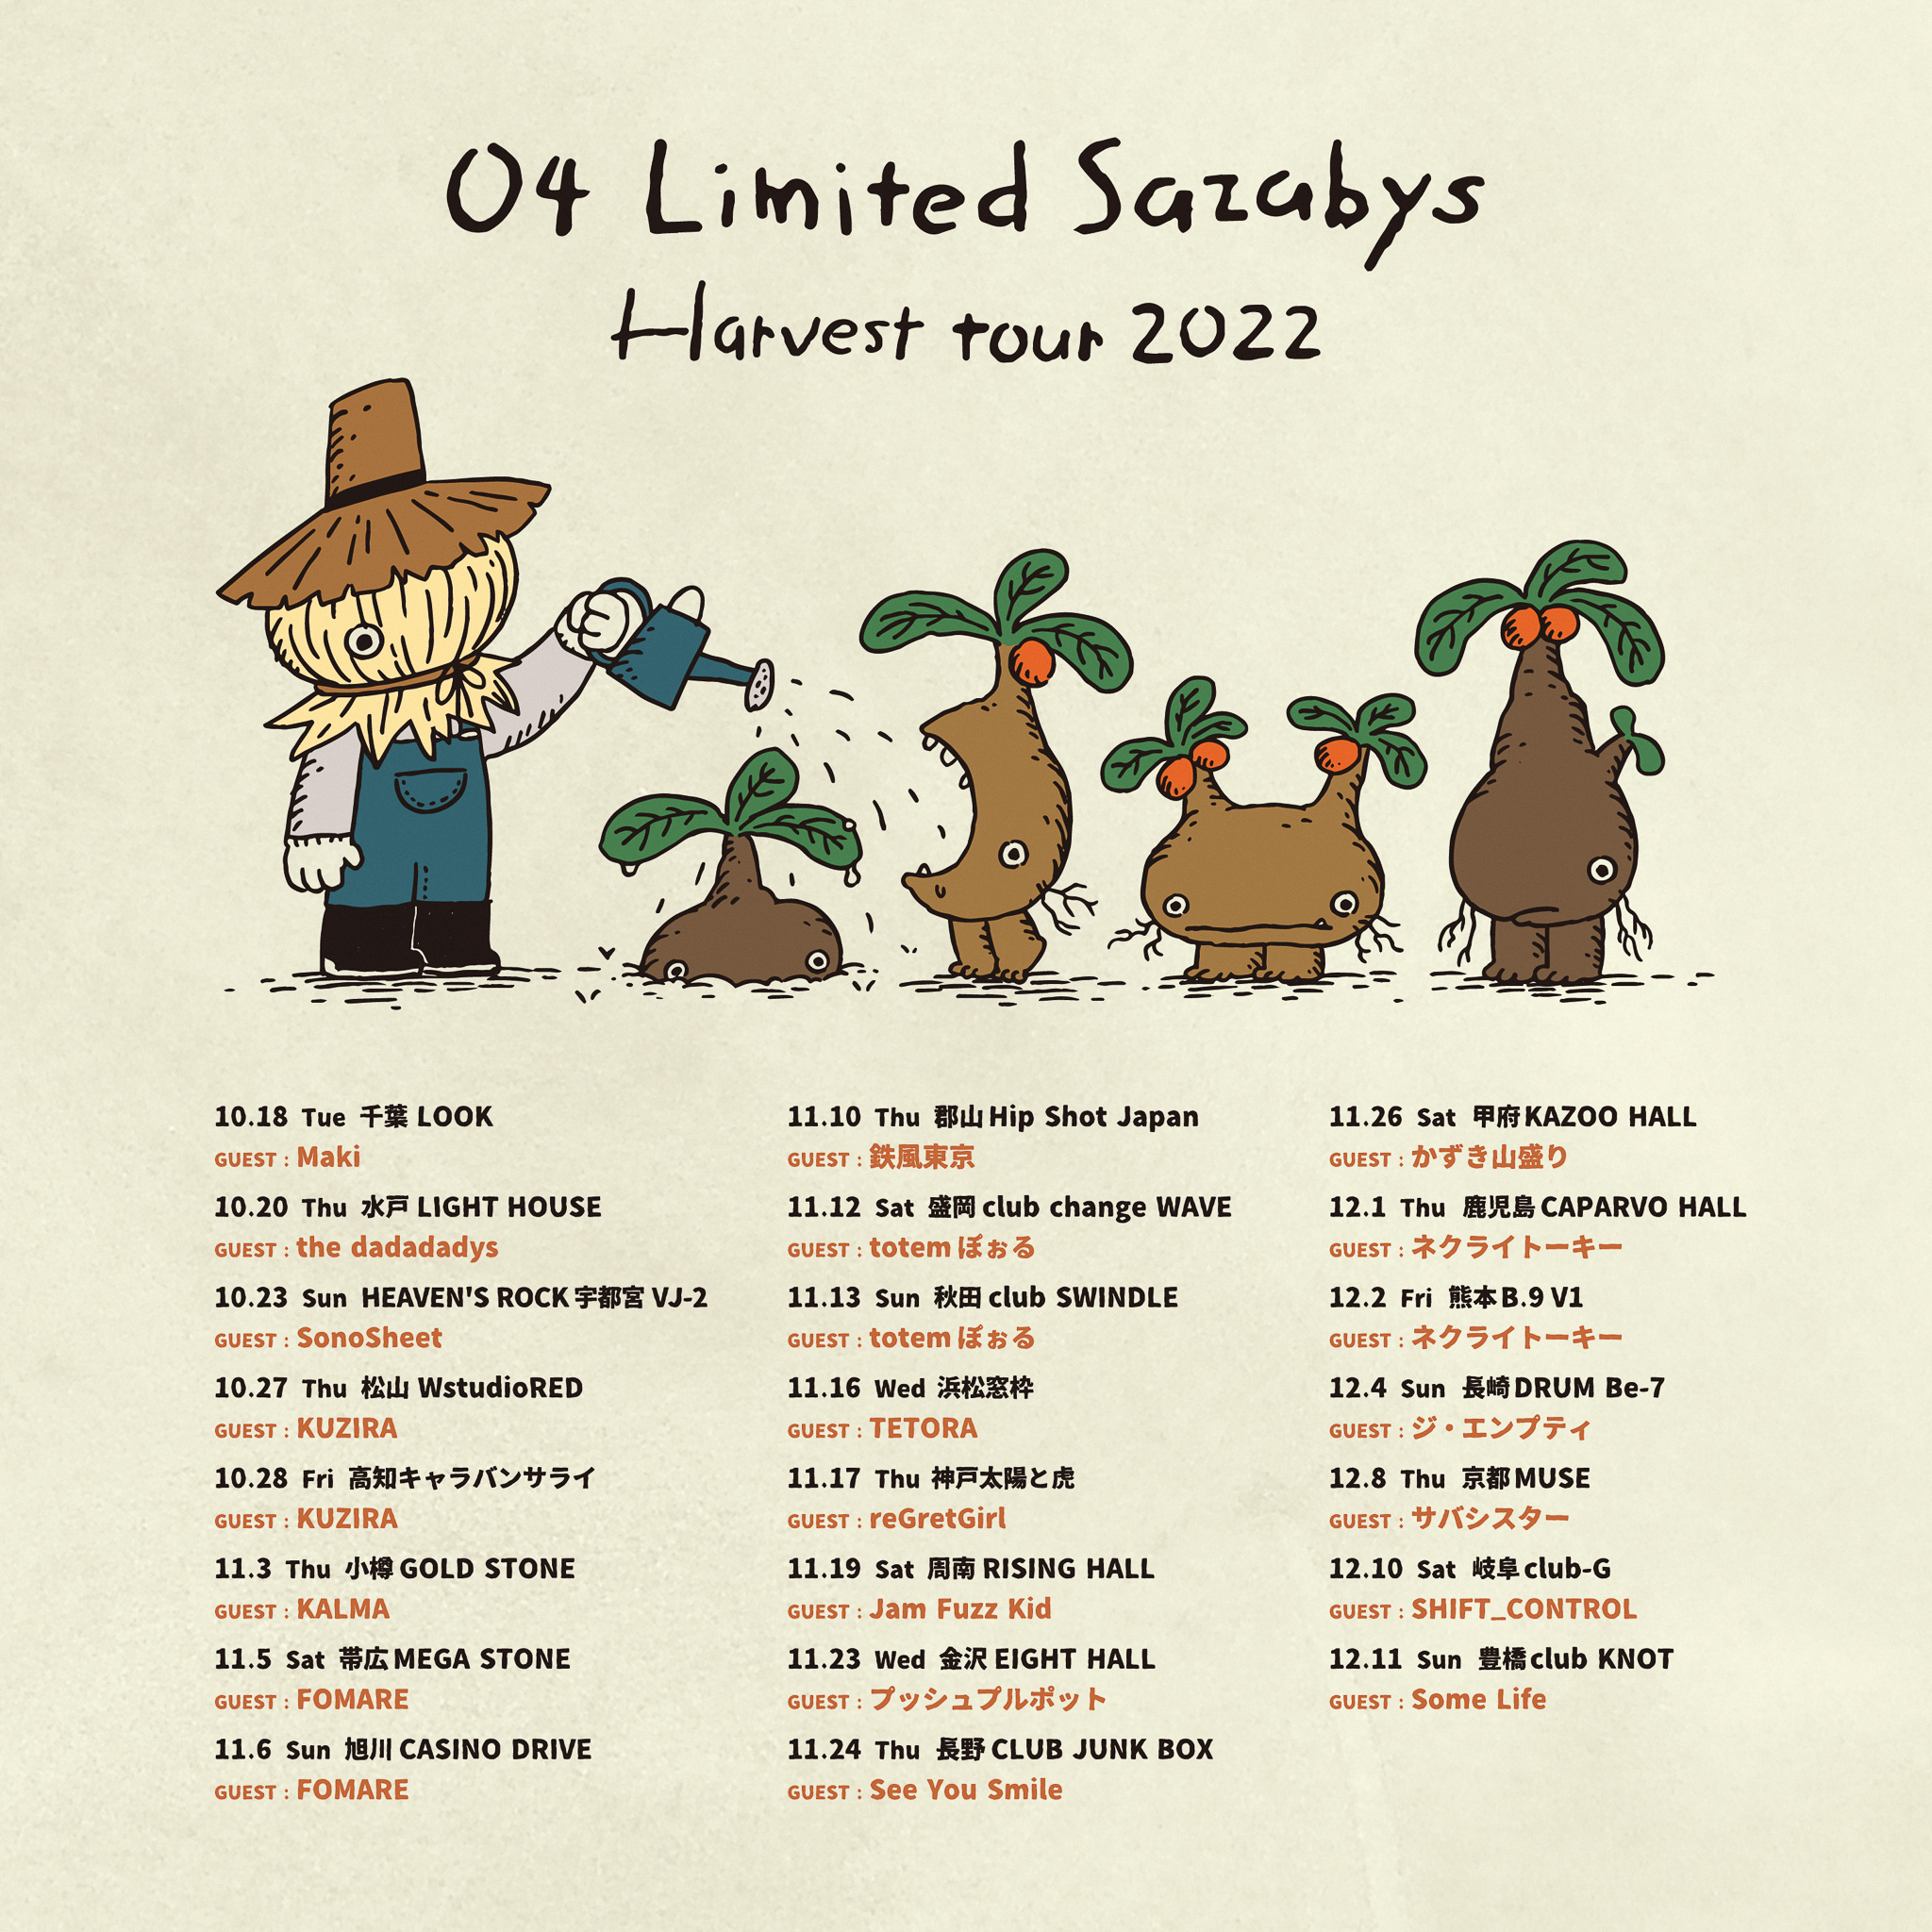 【長野】04 Limited Sazabys "Harvest tour 2022" (長野CLUB JUNK BOX)